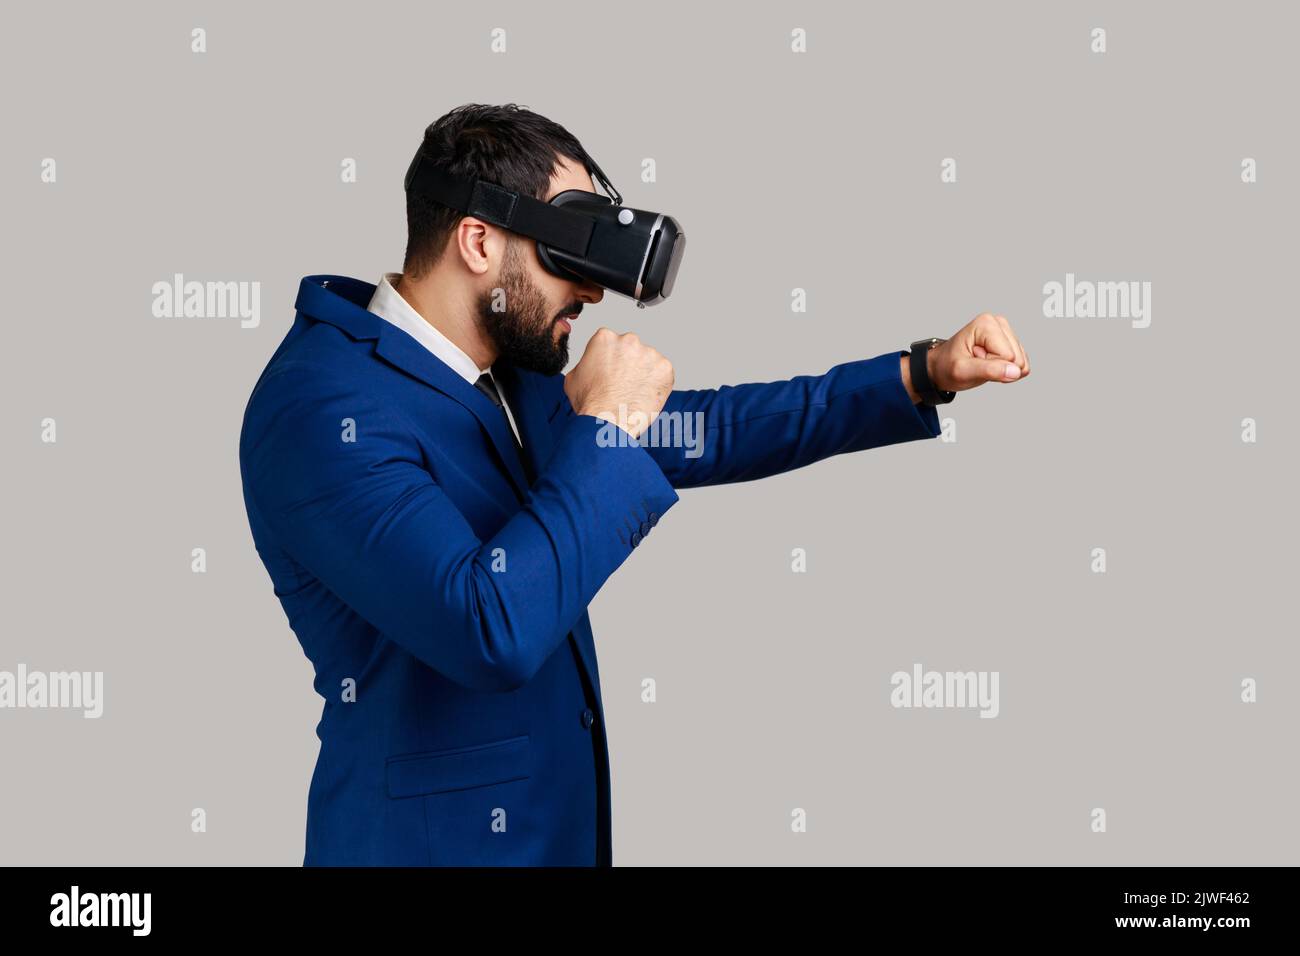 Vue latérale des lunettes de réalité virtuelle MAN sur la tête jouant au jeu de combat, tenant les poings serrés prêts à la boxe, portant un costume de style officiel. Prise de vue en studio isolée sur fond gris. Banque D'Images